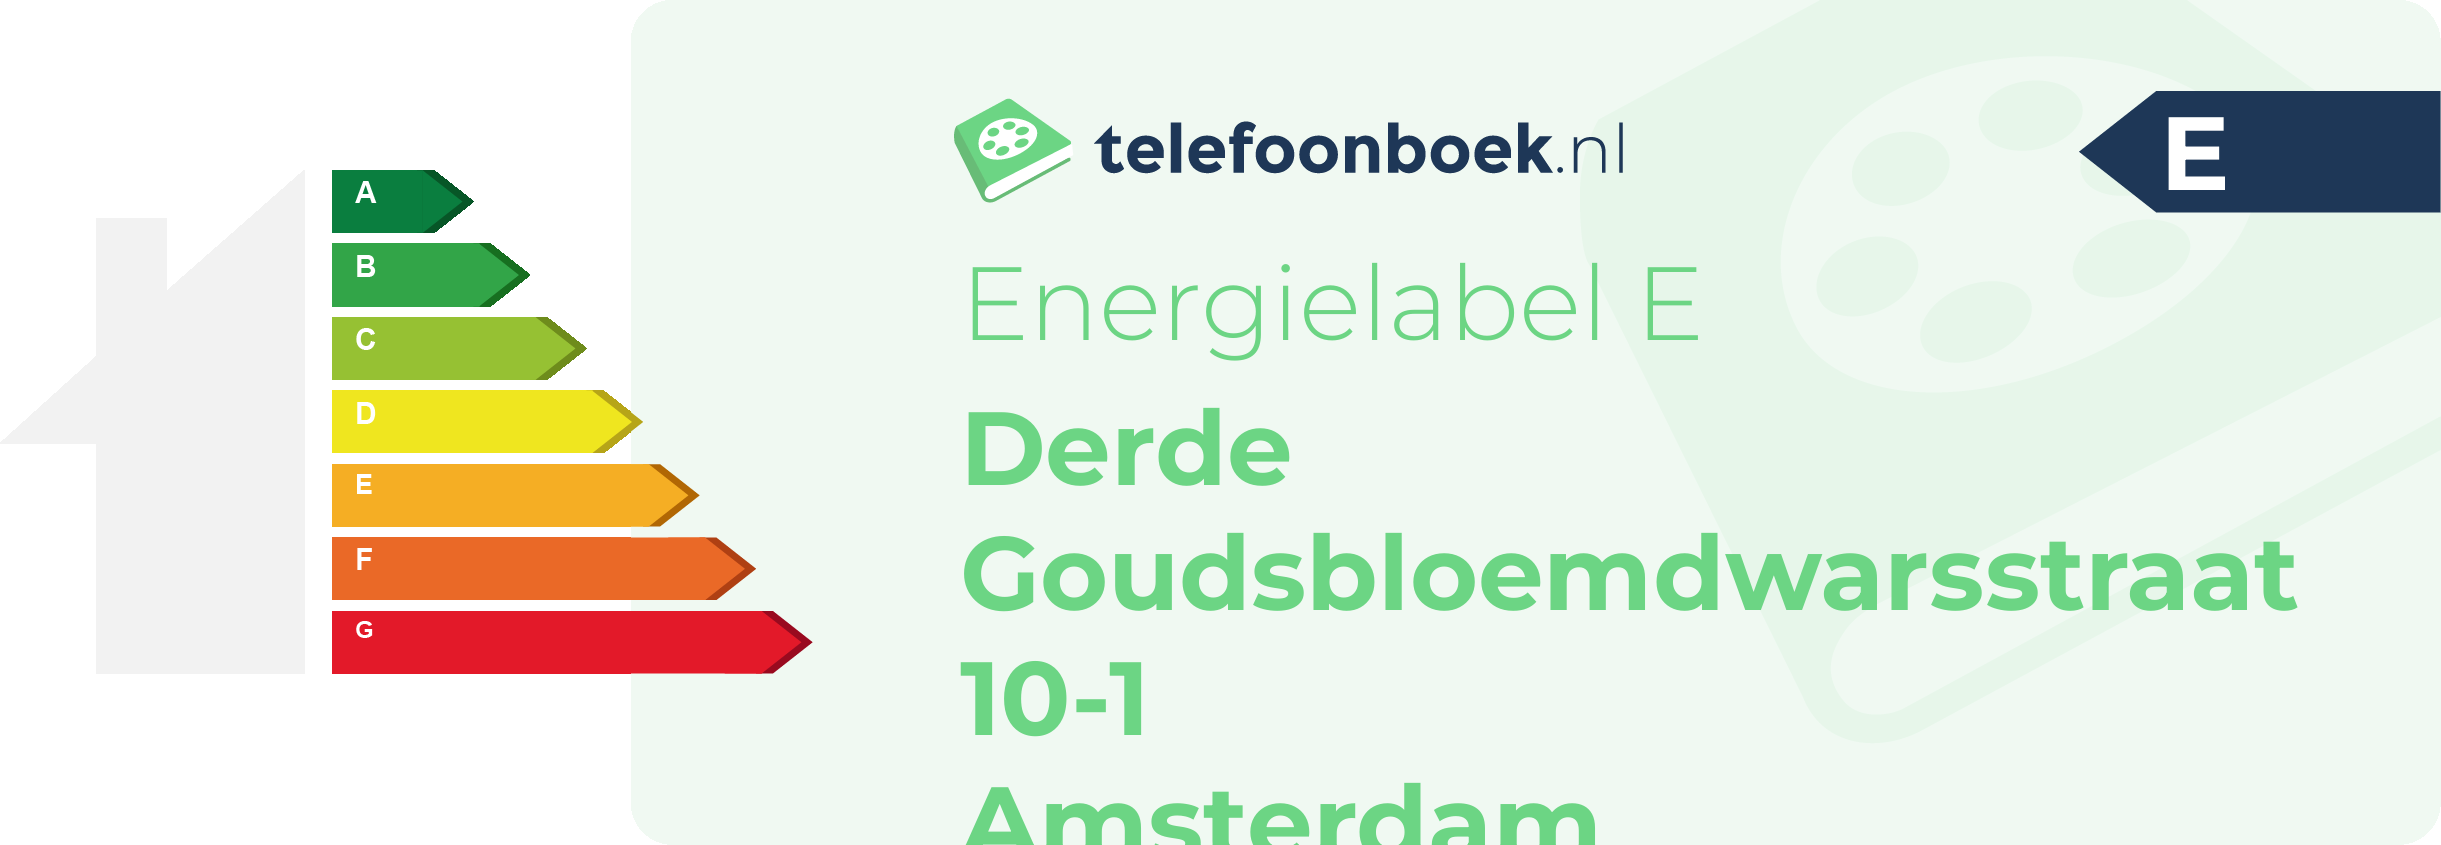 Energielabel Derde Goudsbloemdwarsstraat 10-1 Amsterdam